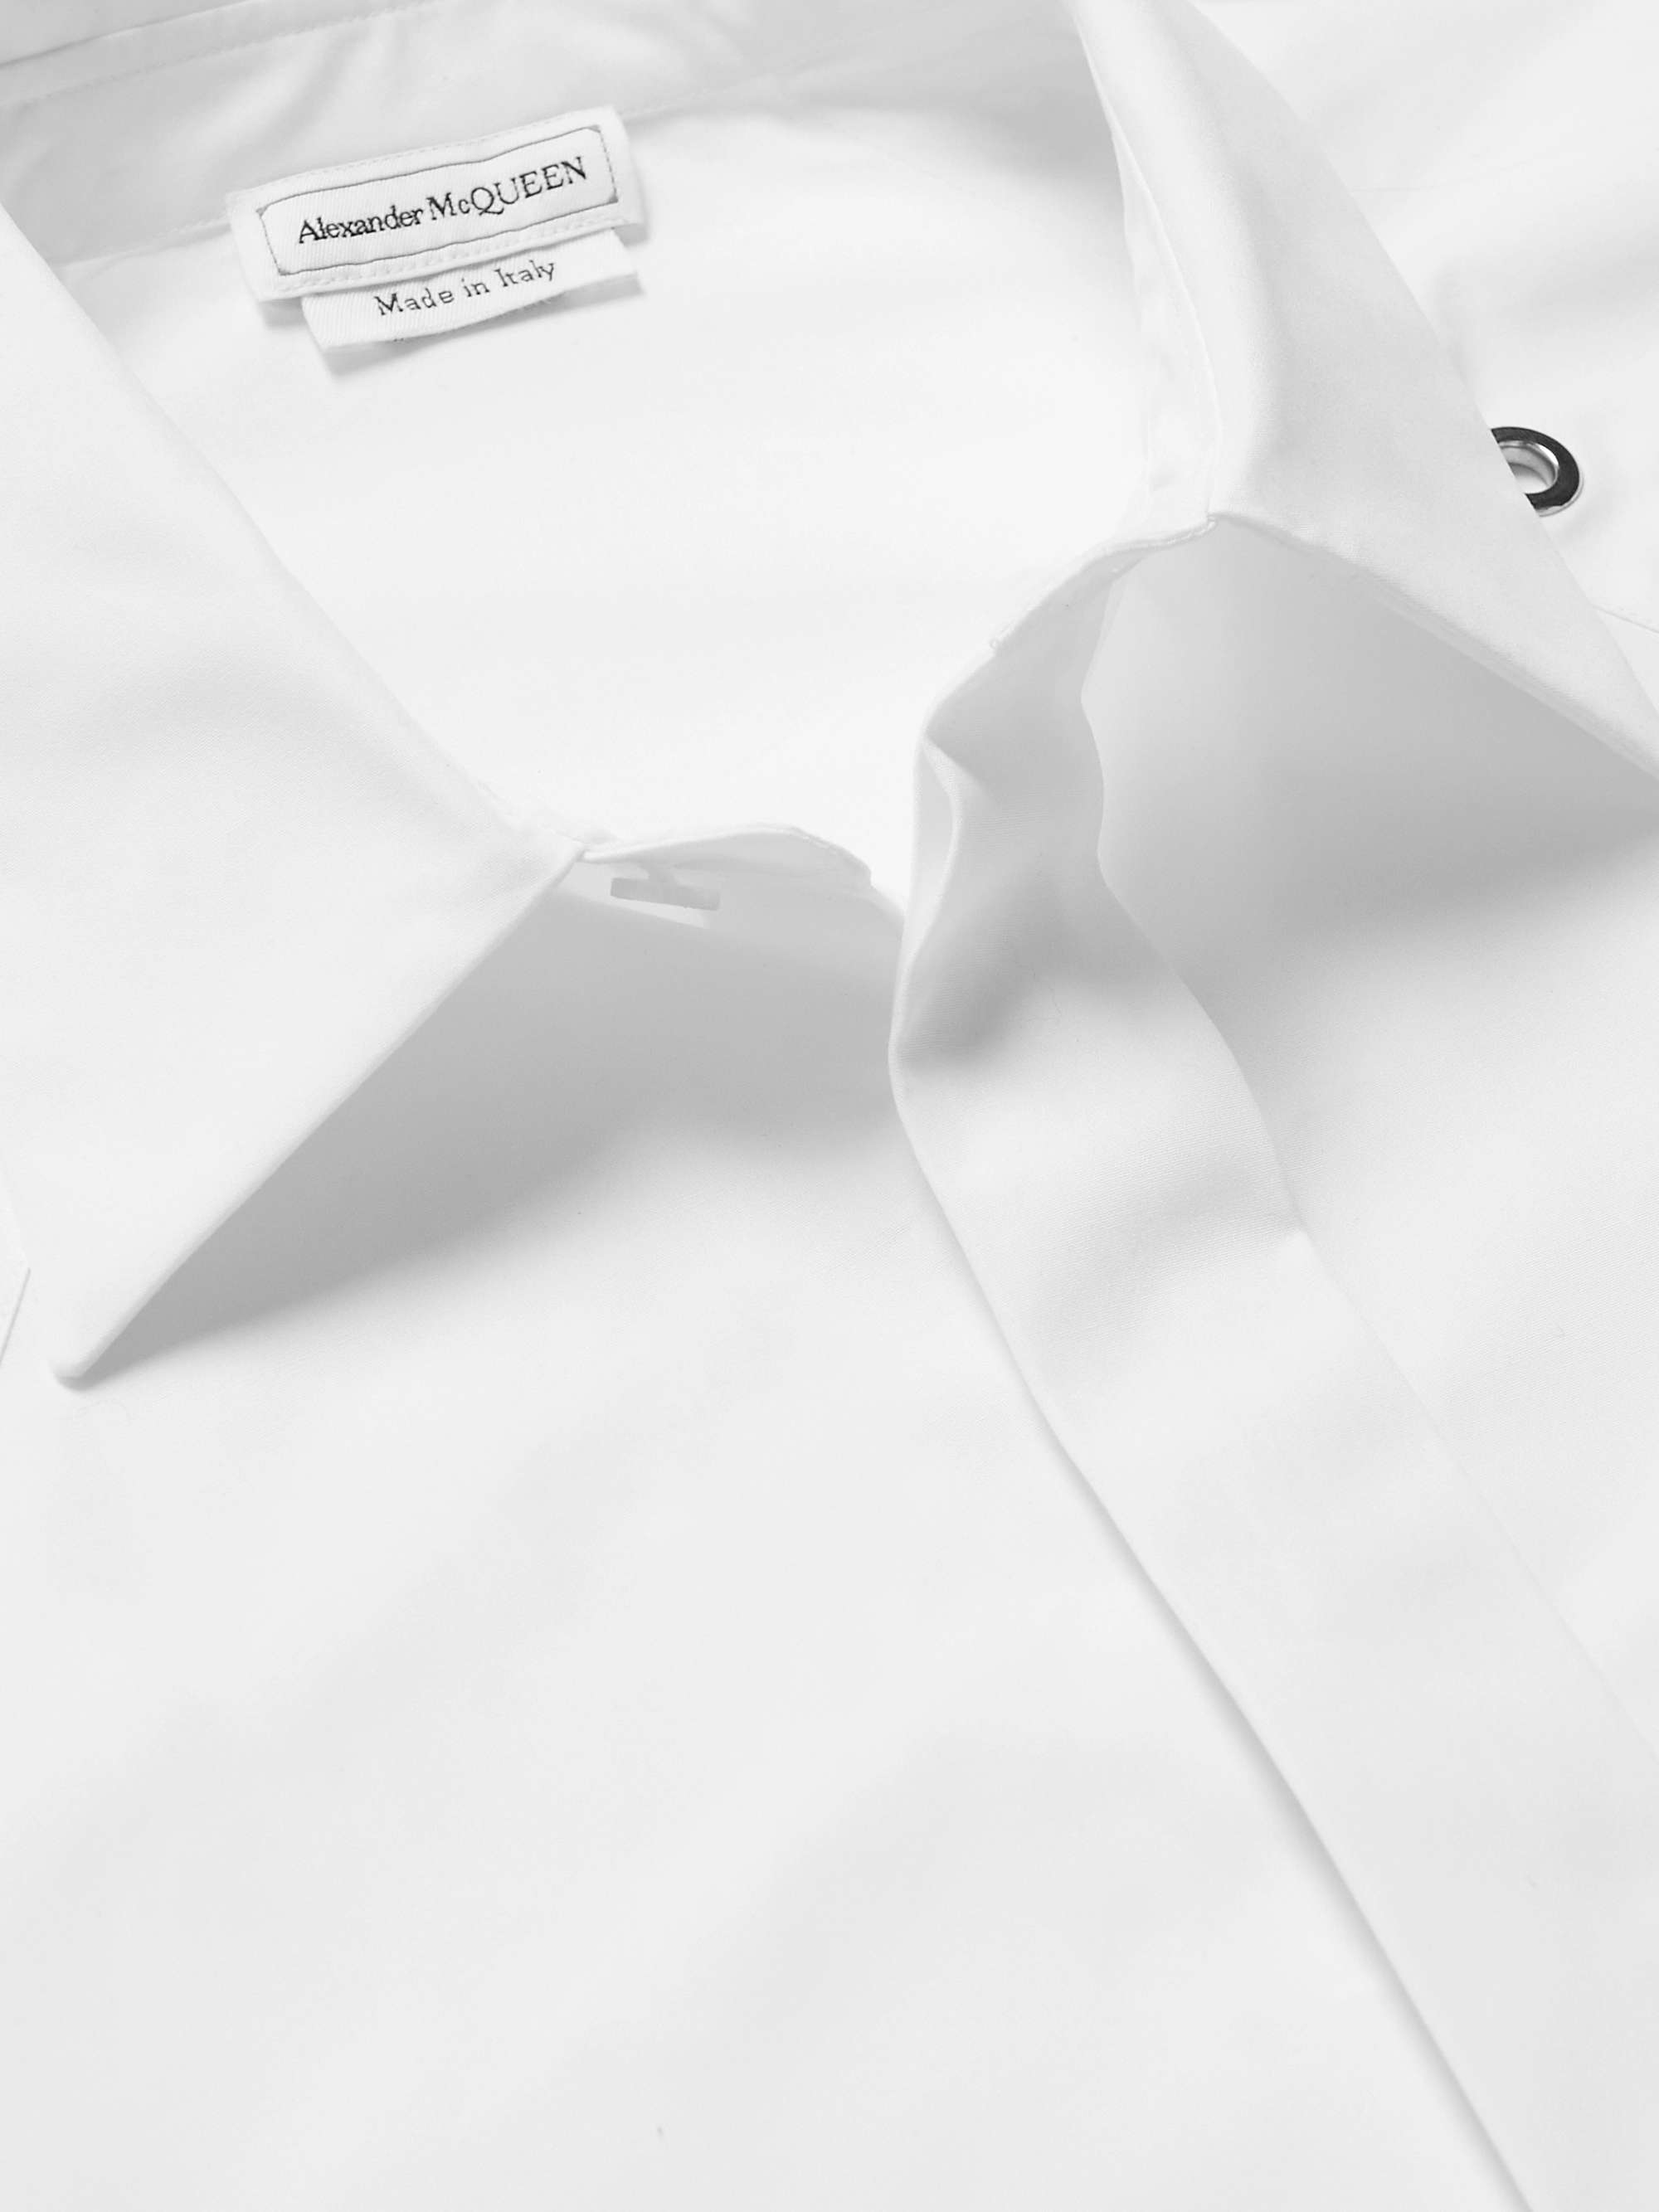 ALEXANDER MCQUEEN Studded Cotton-Poplin Shirt